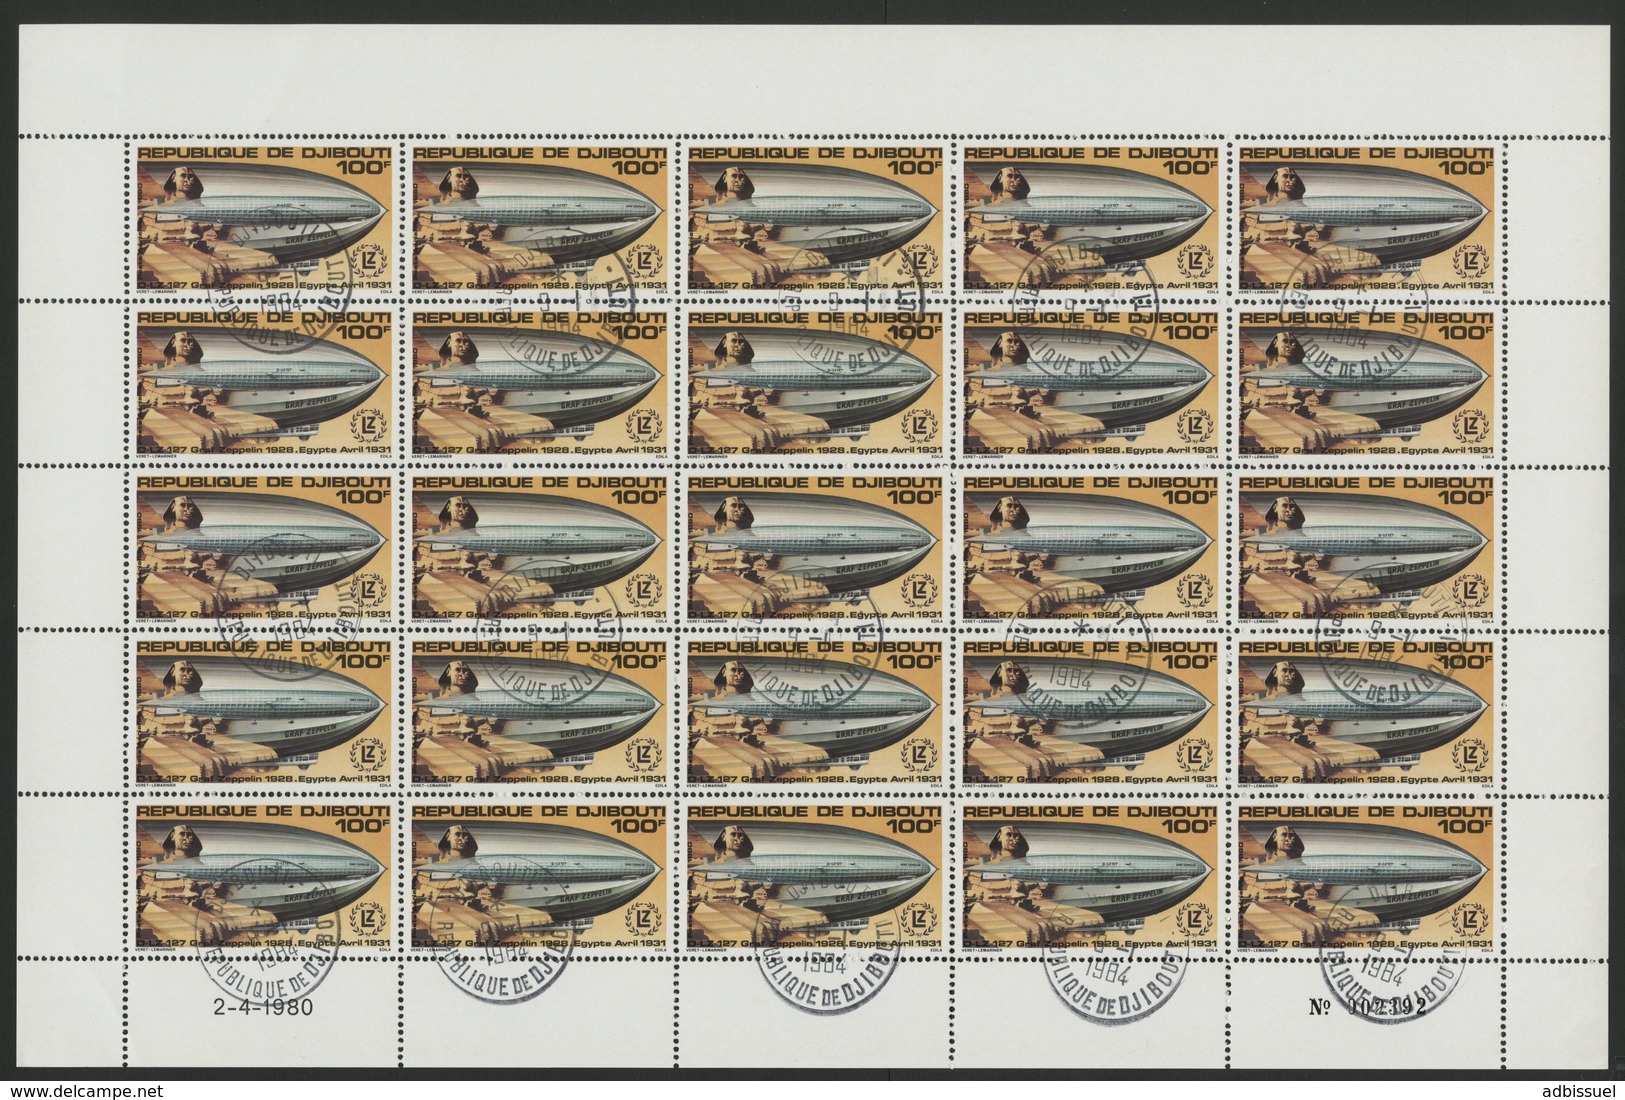 DJIBOUTI POSTE AERIENNE N° 144 FEUILLE COMPLETE DE 25 EXEMPLAIRES COTE 20 EUROS DU 100 Fr GRAFF ZEPPELIN - Zeppelines